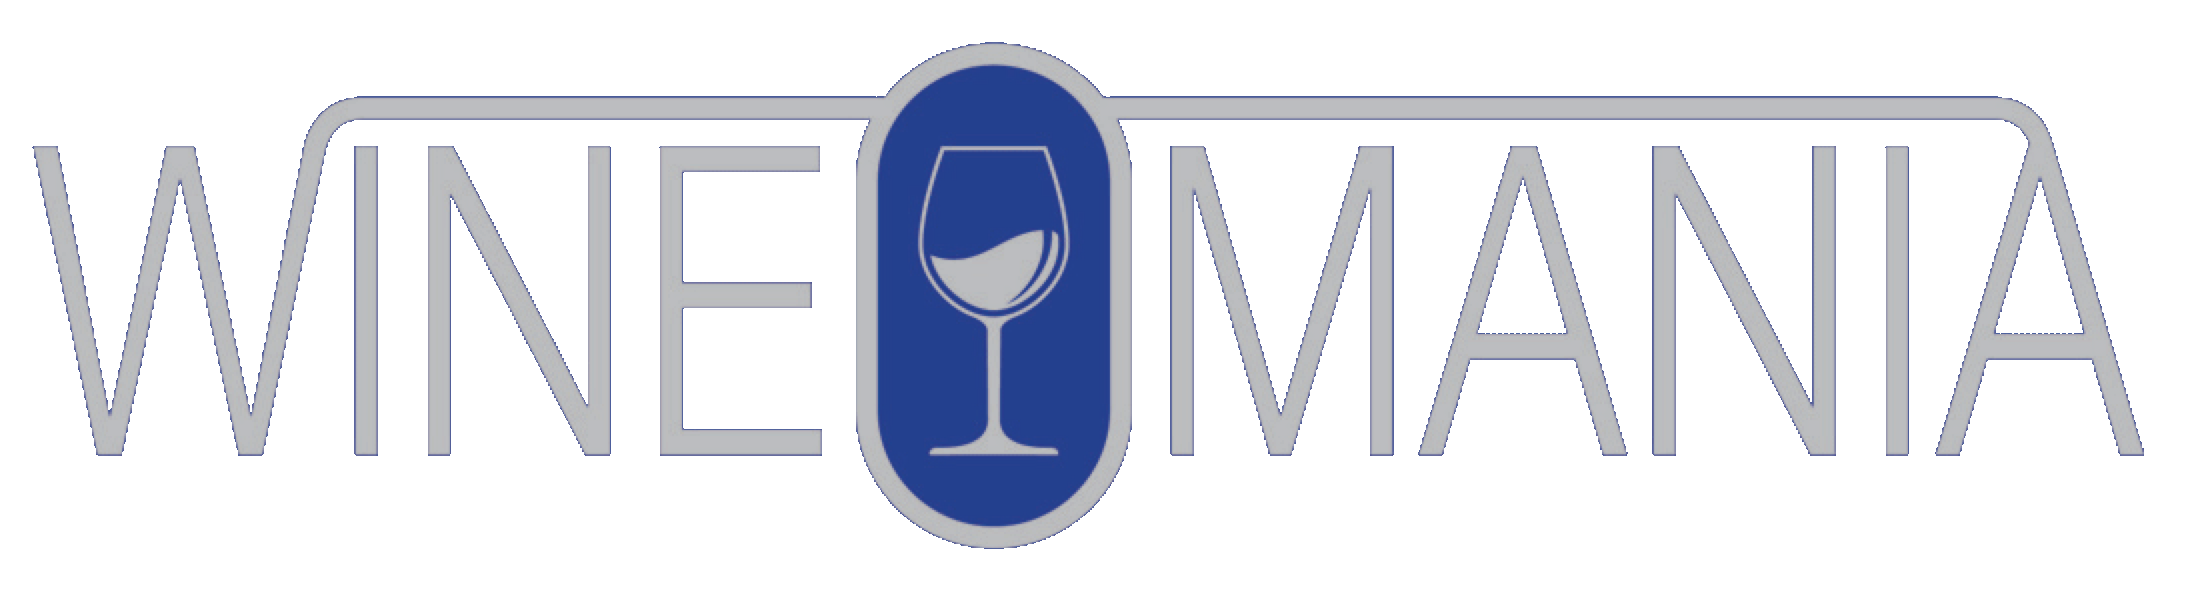 Wineomania | Wines & Wine Tasting